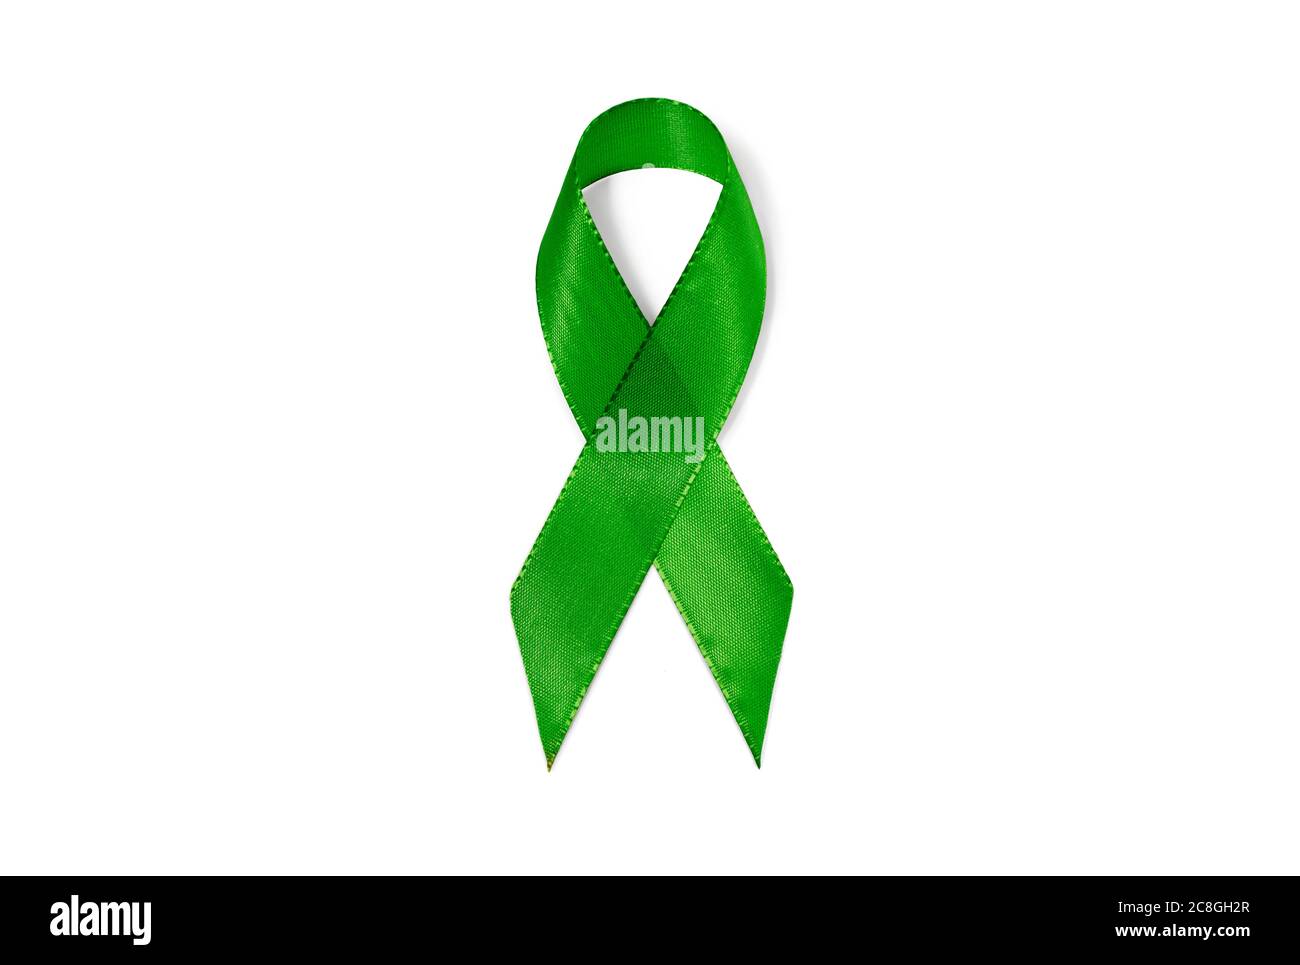 Symbole image ruban de sensibilisation Vert, ruban, signe de solidarité, paralysie cérébrale, maladie rénale, santé mentale, trouble bipolaire Banque D'Images